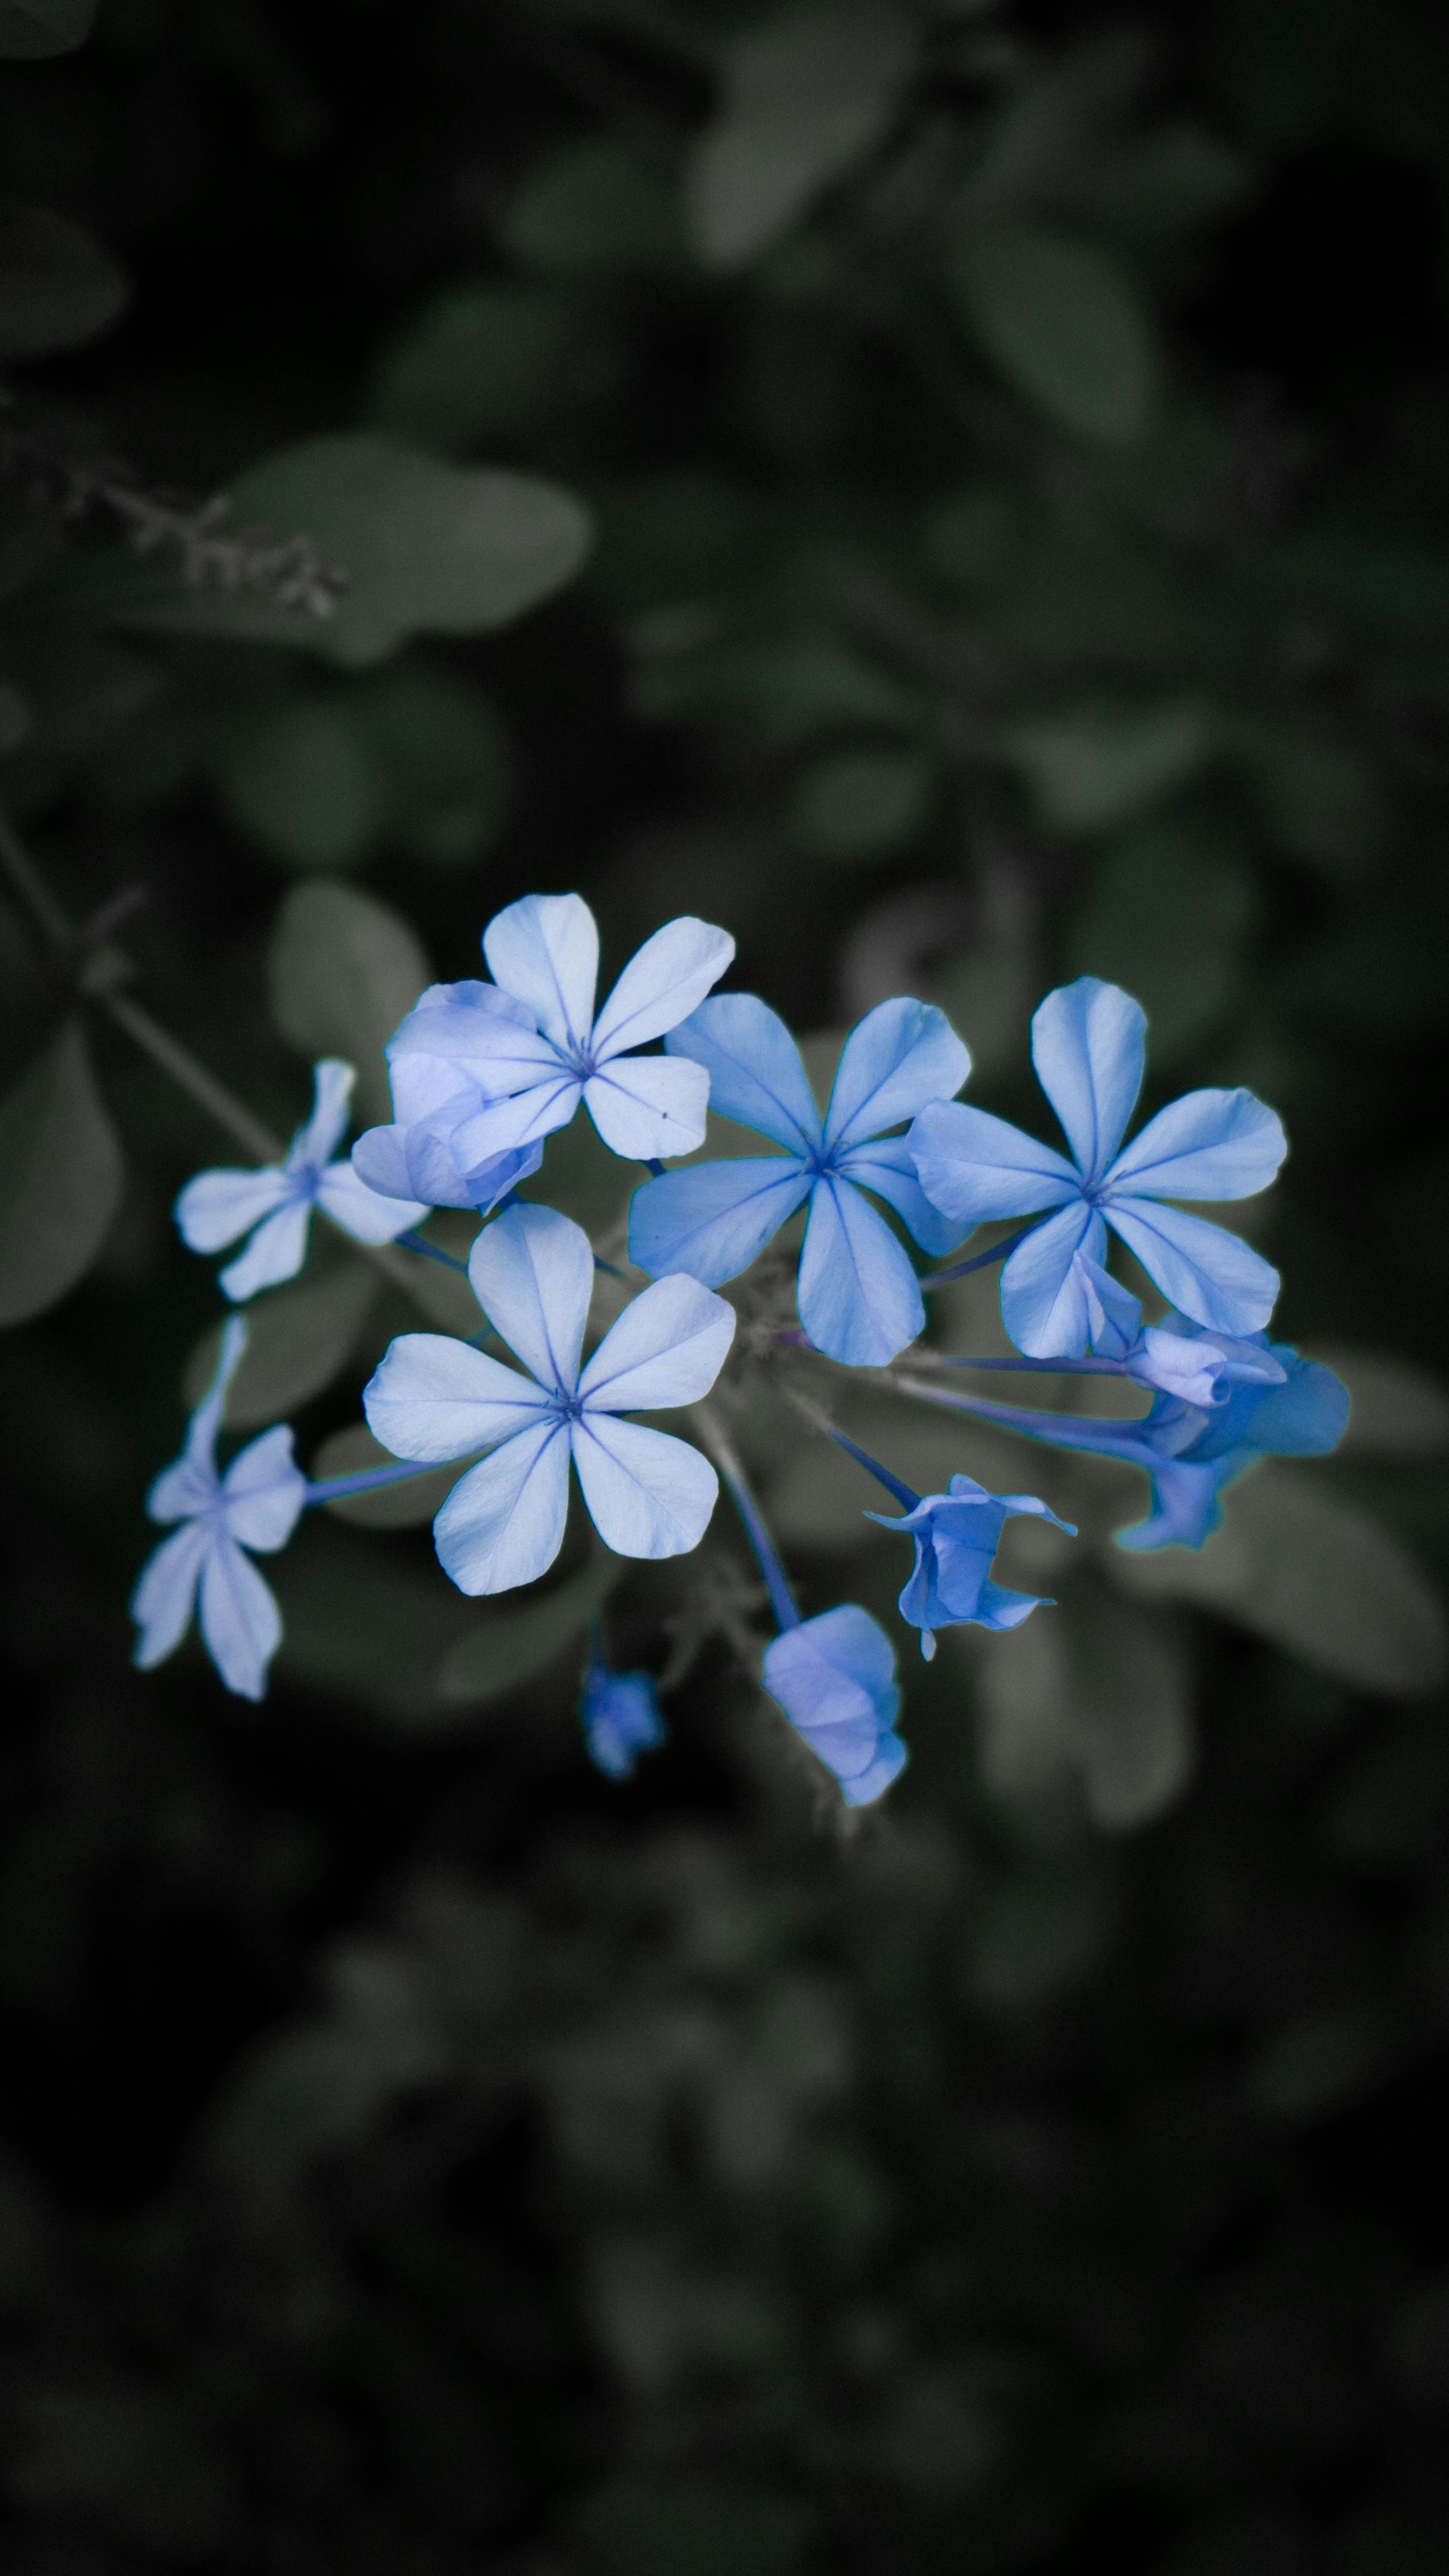 Beauty flowers, in the wild. Feelings for blue.